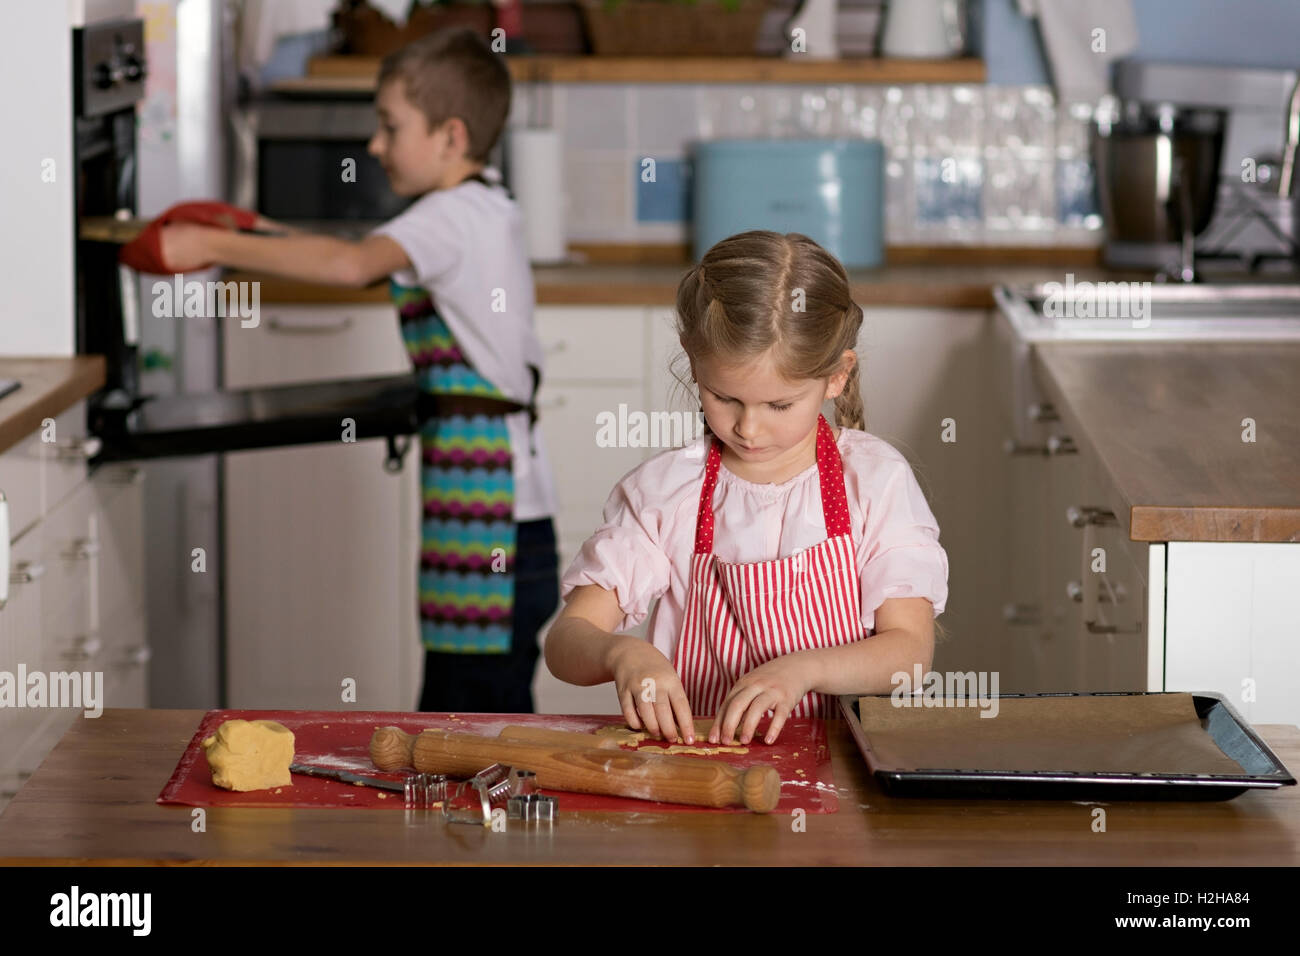 Junge unter einer Schale mit Keksen aus einem Ofen, während eine Mädchen Schnittformen aus in der Konditorei ist Stockfoto